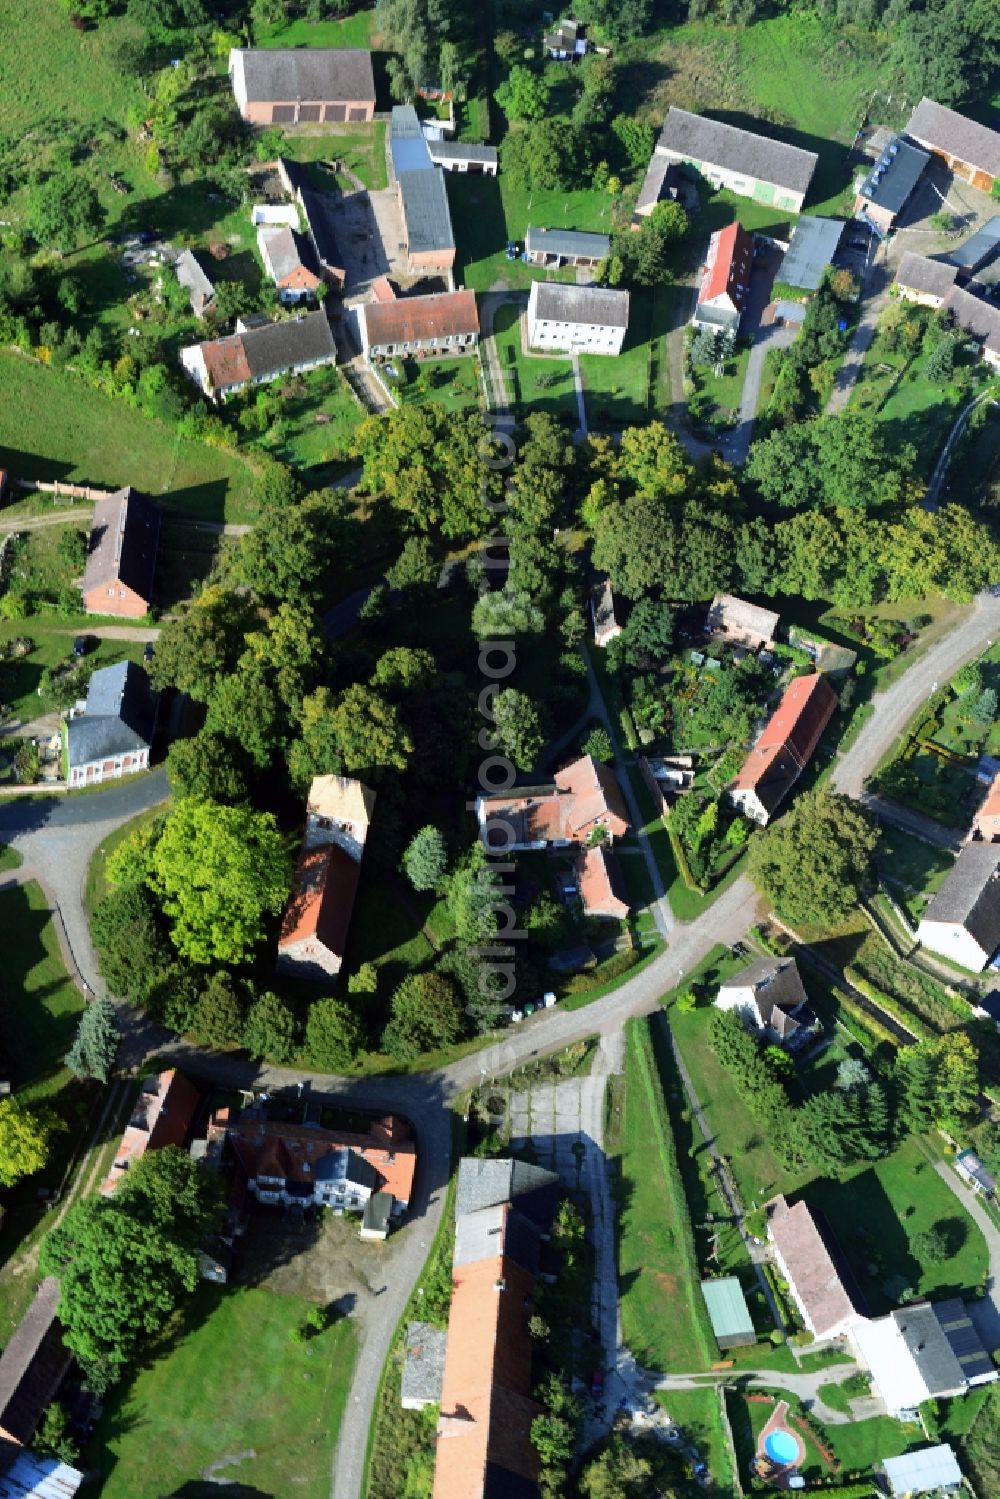 Aerial image Halenbeck-Rohlsdorf - Village of Halen-Rohlsdorf in Brandenburg